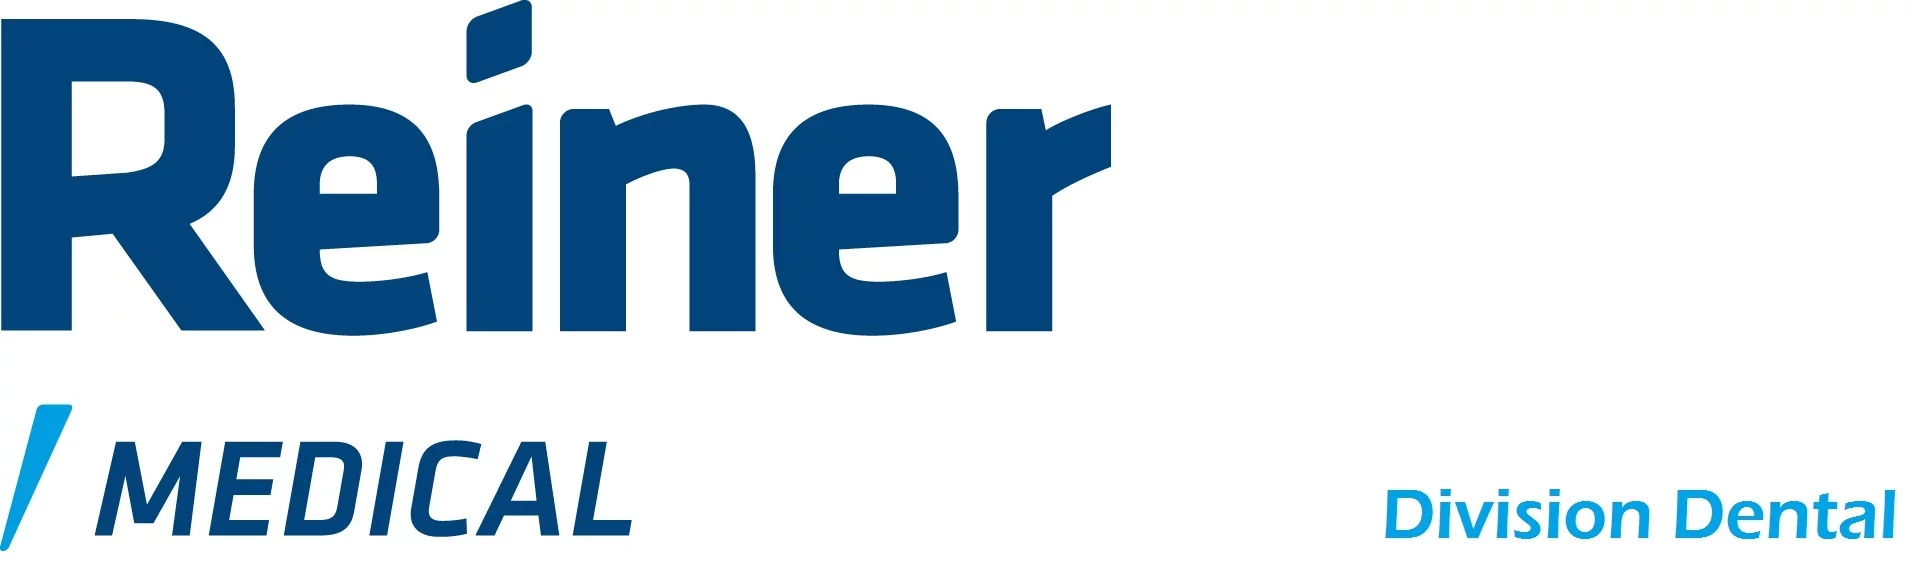 Reiner Medical (Independent Medical Group)